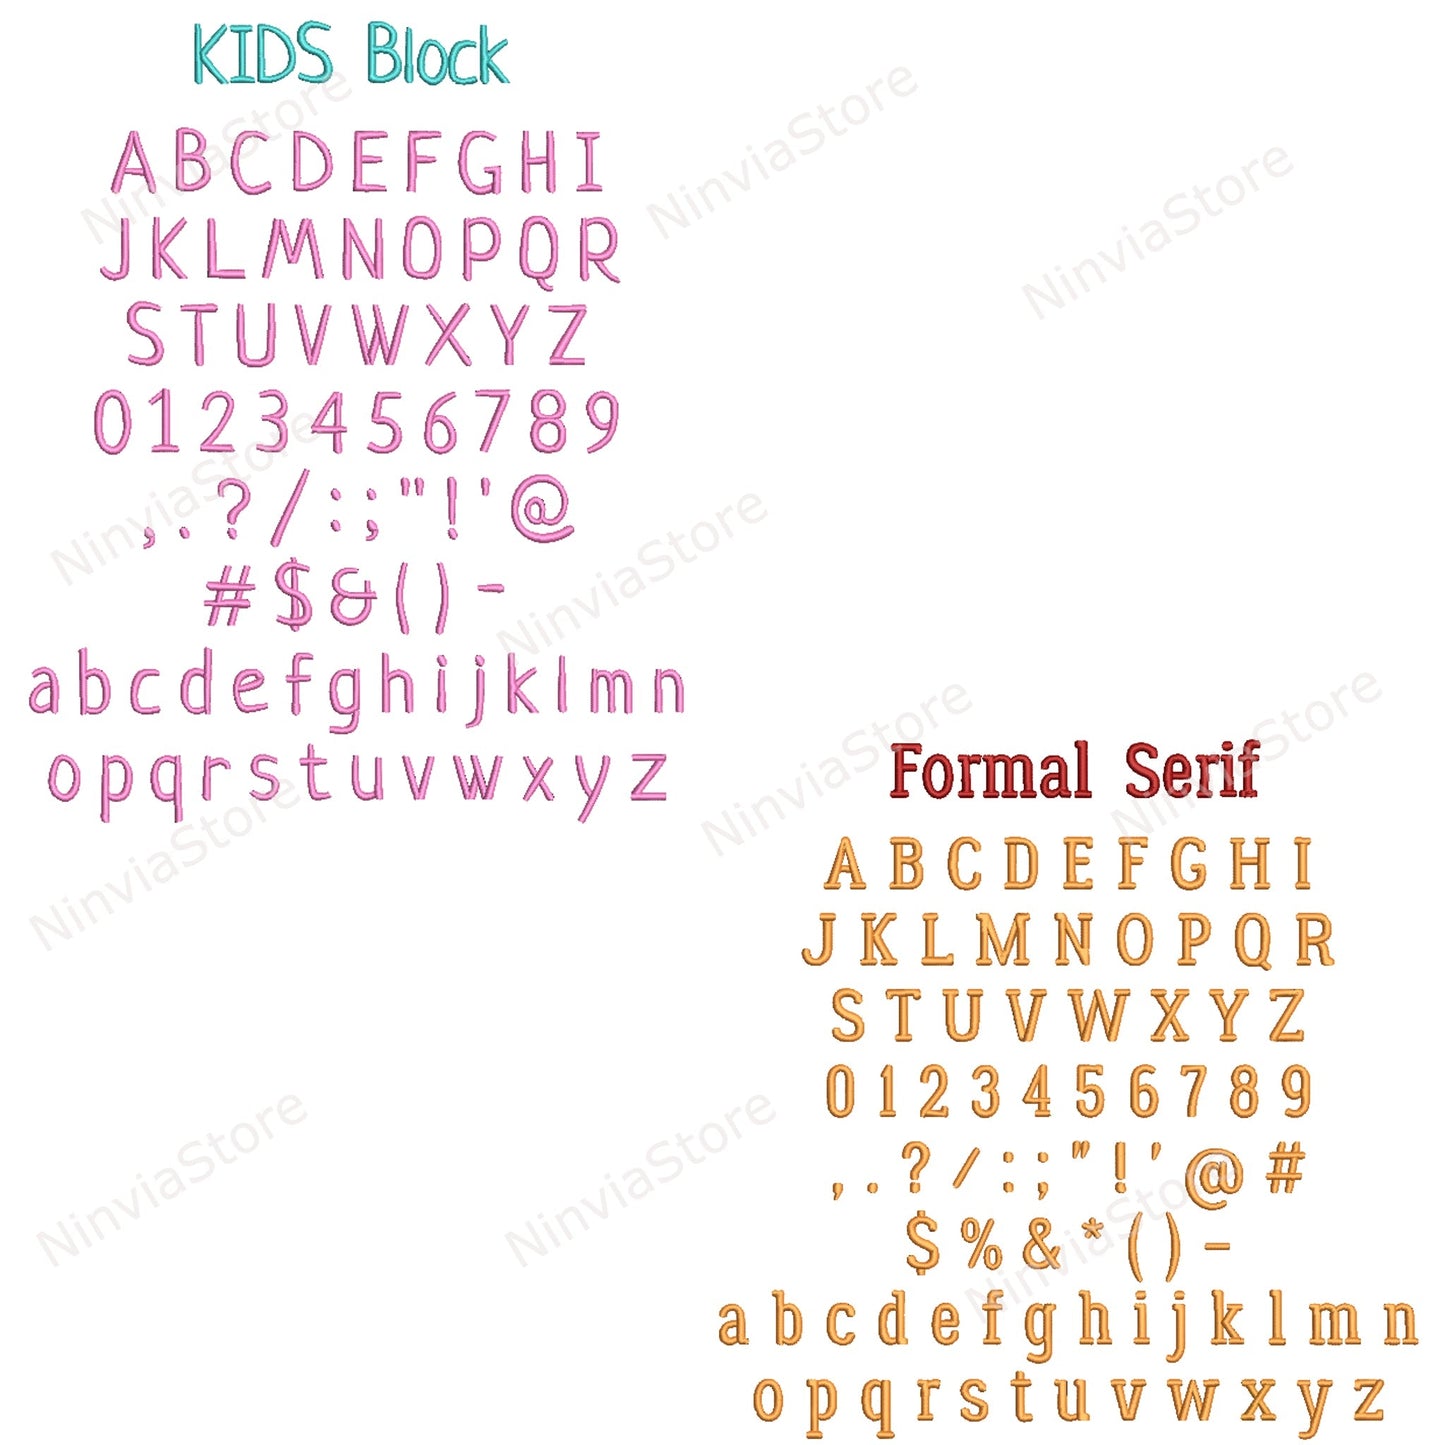 12 DST Stickschrift-Paket, Maschinenstickschrift DST, kleine Stickschrift Monogramm Alphabet Stickmuster, DST-Schriftart für Stickerei